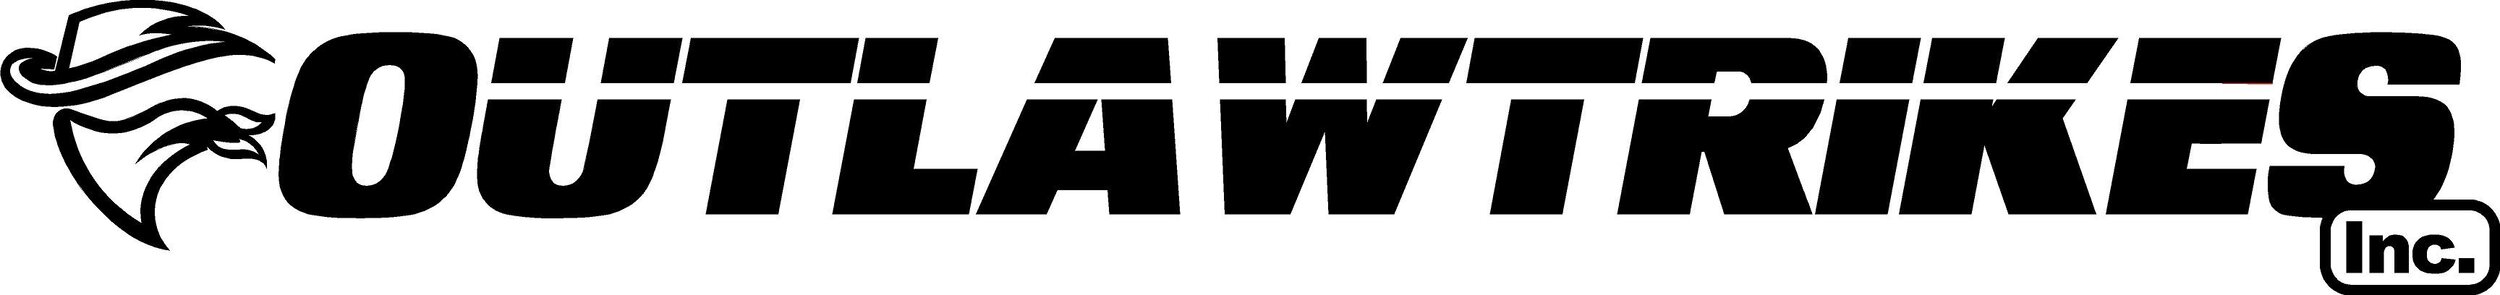 outlawtriks logo.jpg